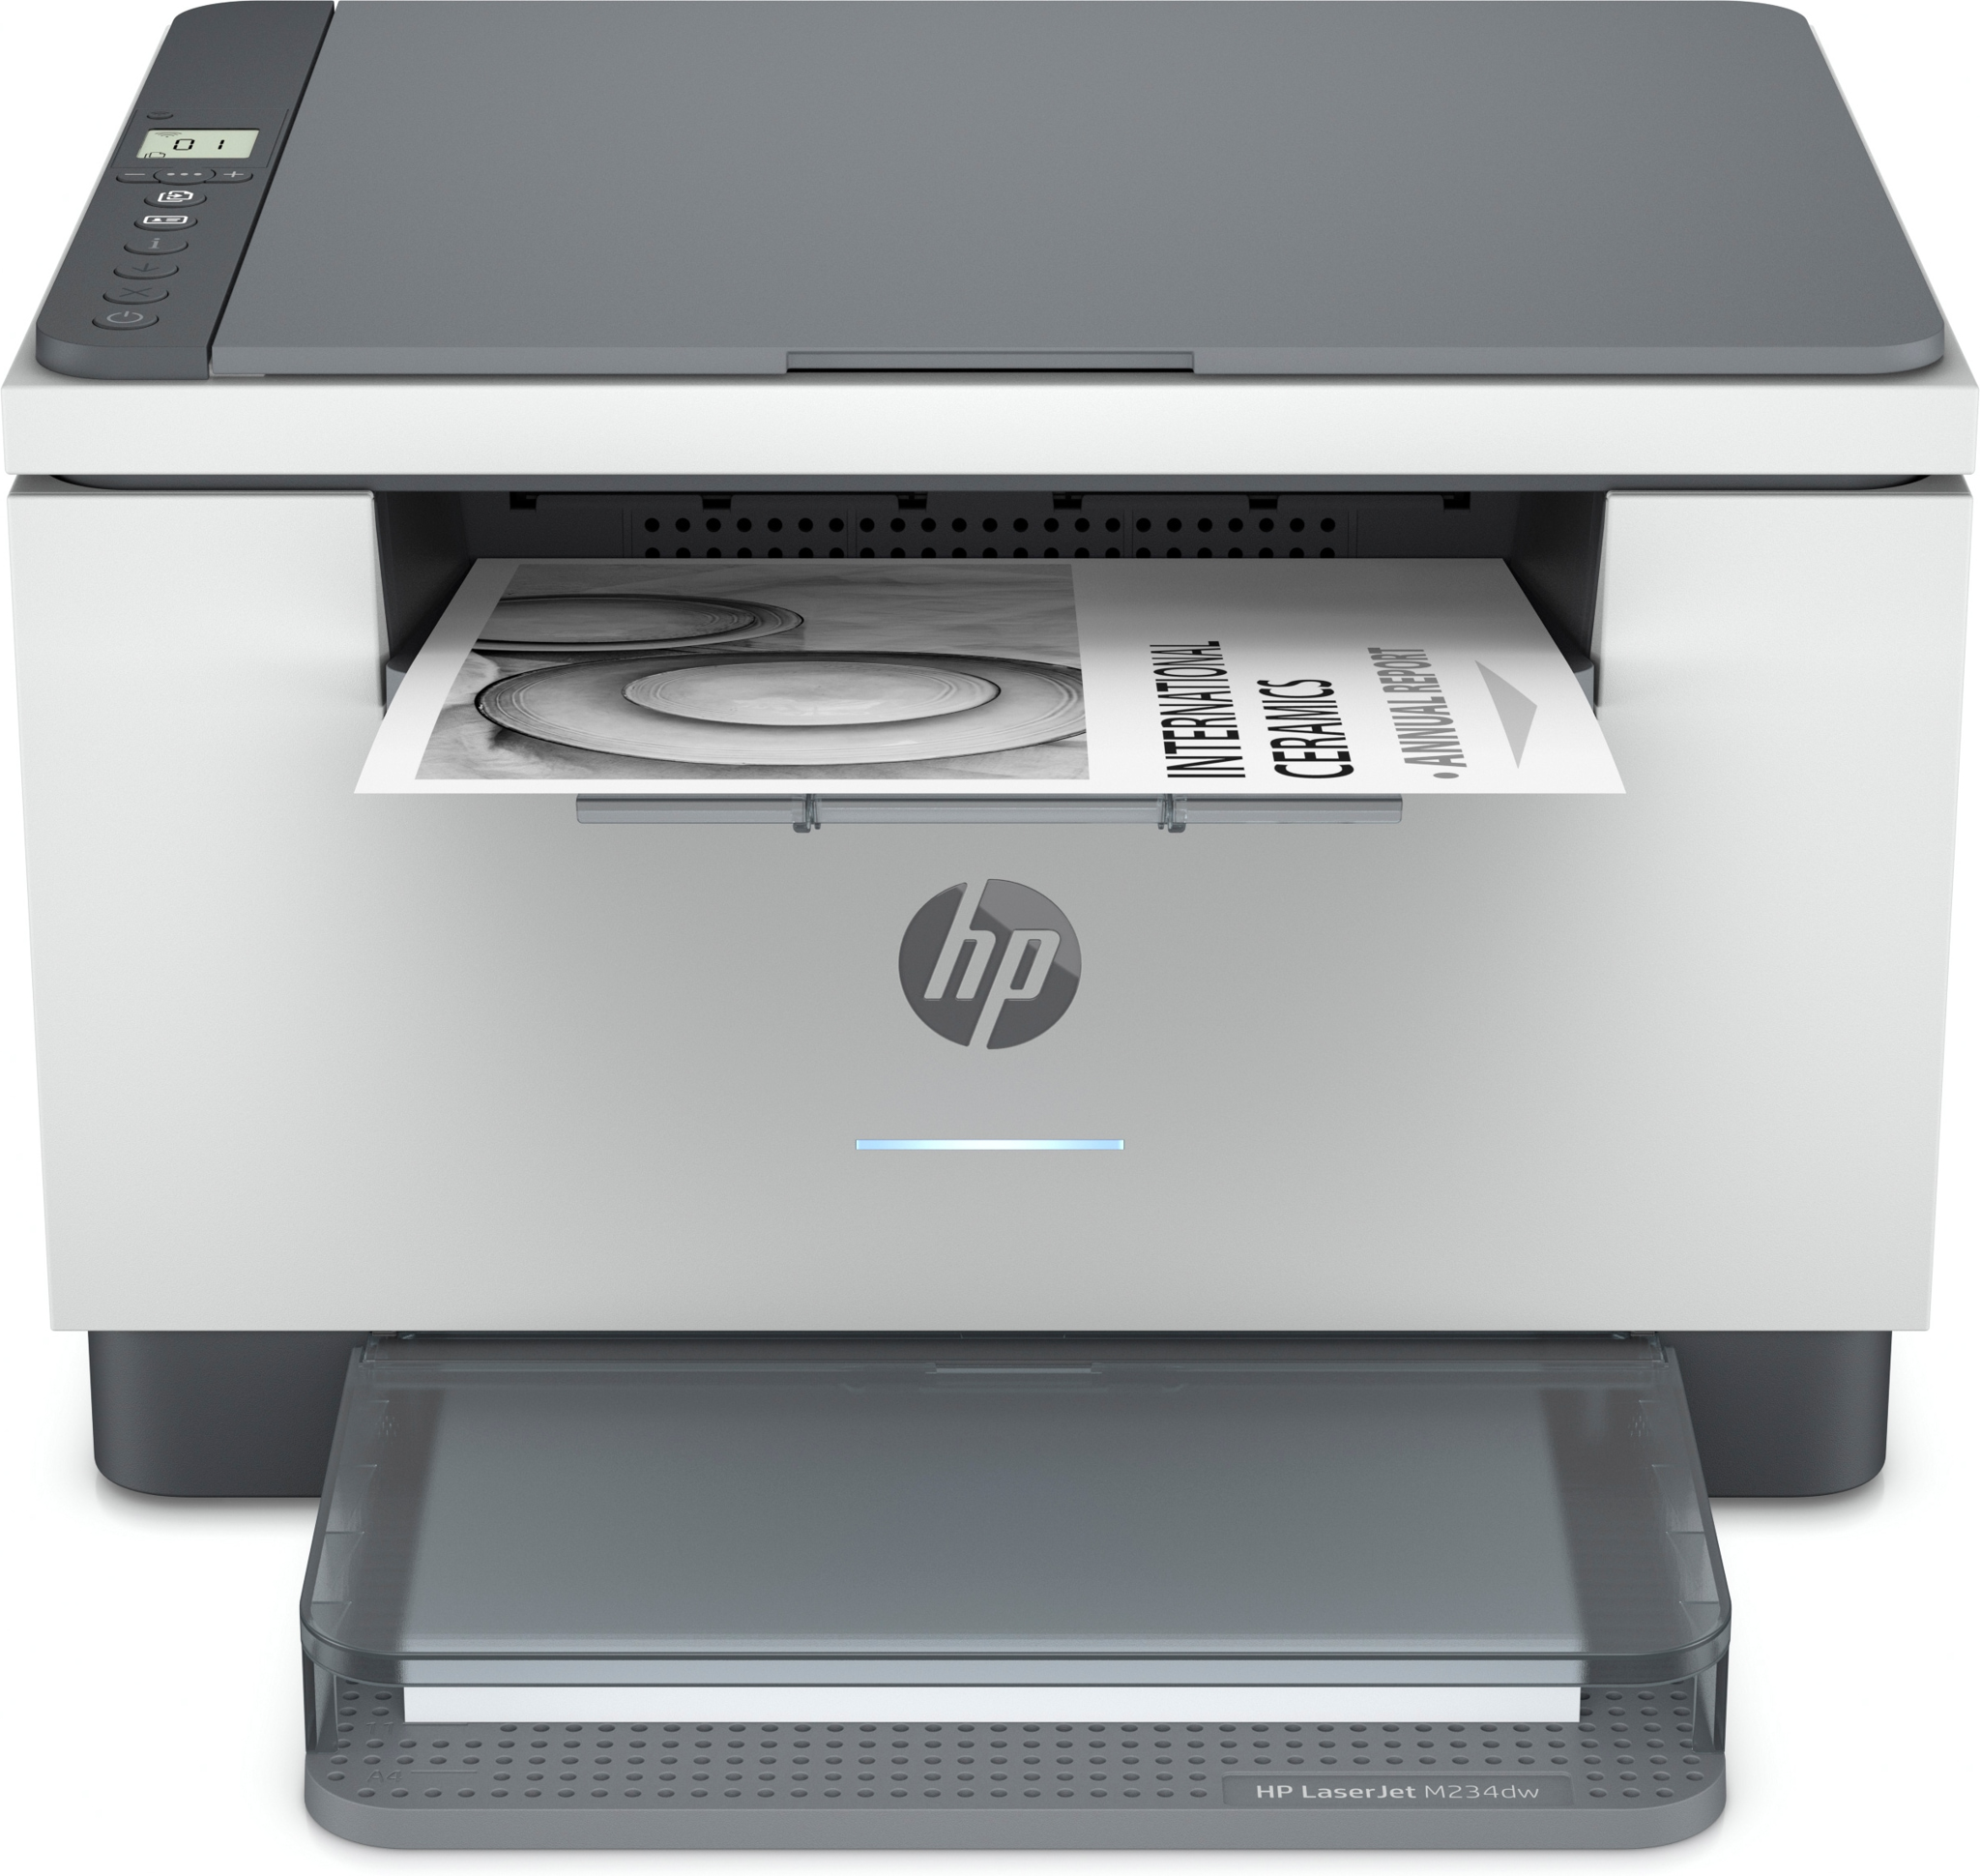 Bild von HP LaserJet MFP M234dw Drucker - Schwarzweiß - Drucker für Kleine Büros - Drucken - Kopieren - Scannen - Scannen an E-Mail; Scannen an PDF - Laser - Monodruck - 600 x 600 DPI - A4 - Direktdruck - Grau